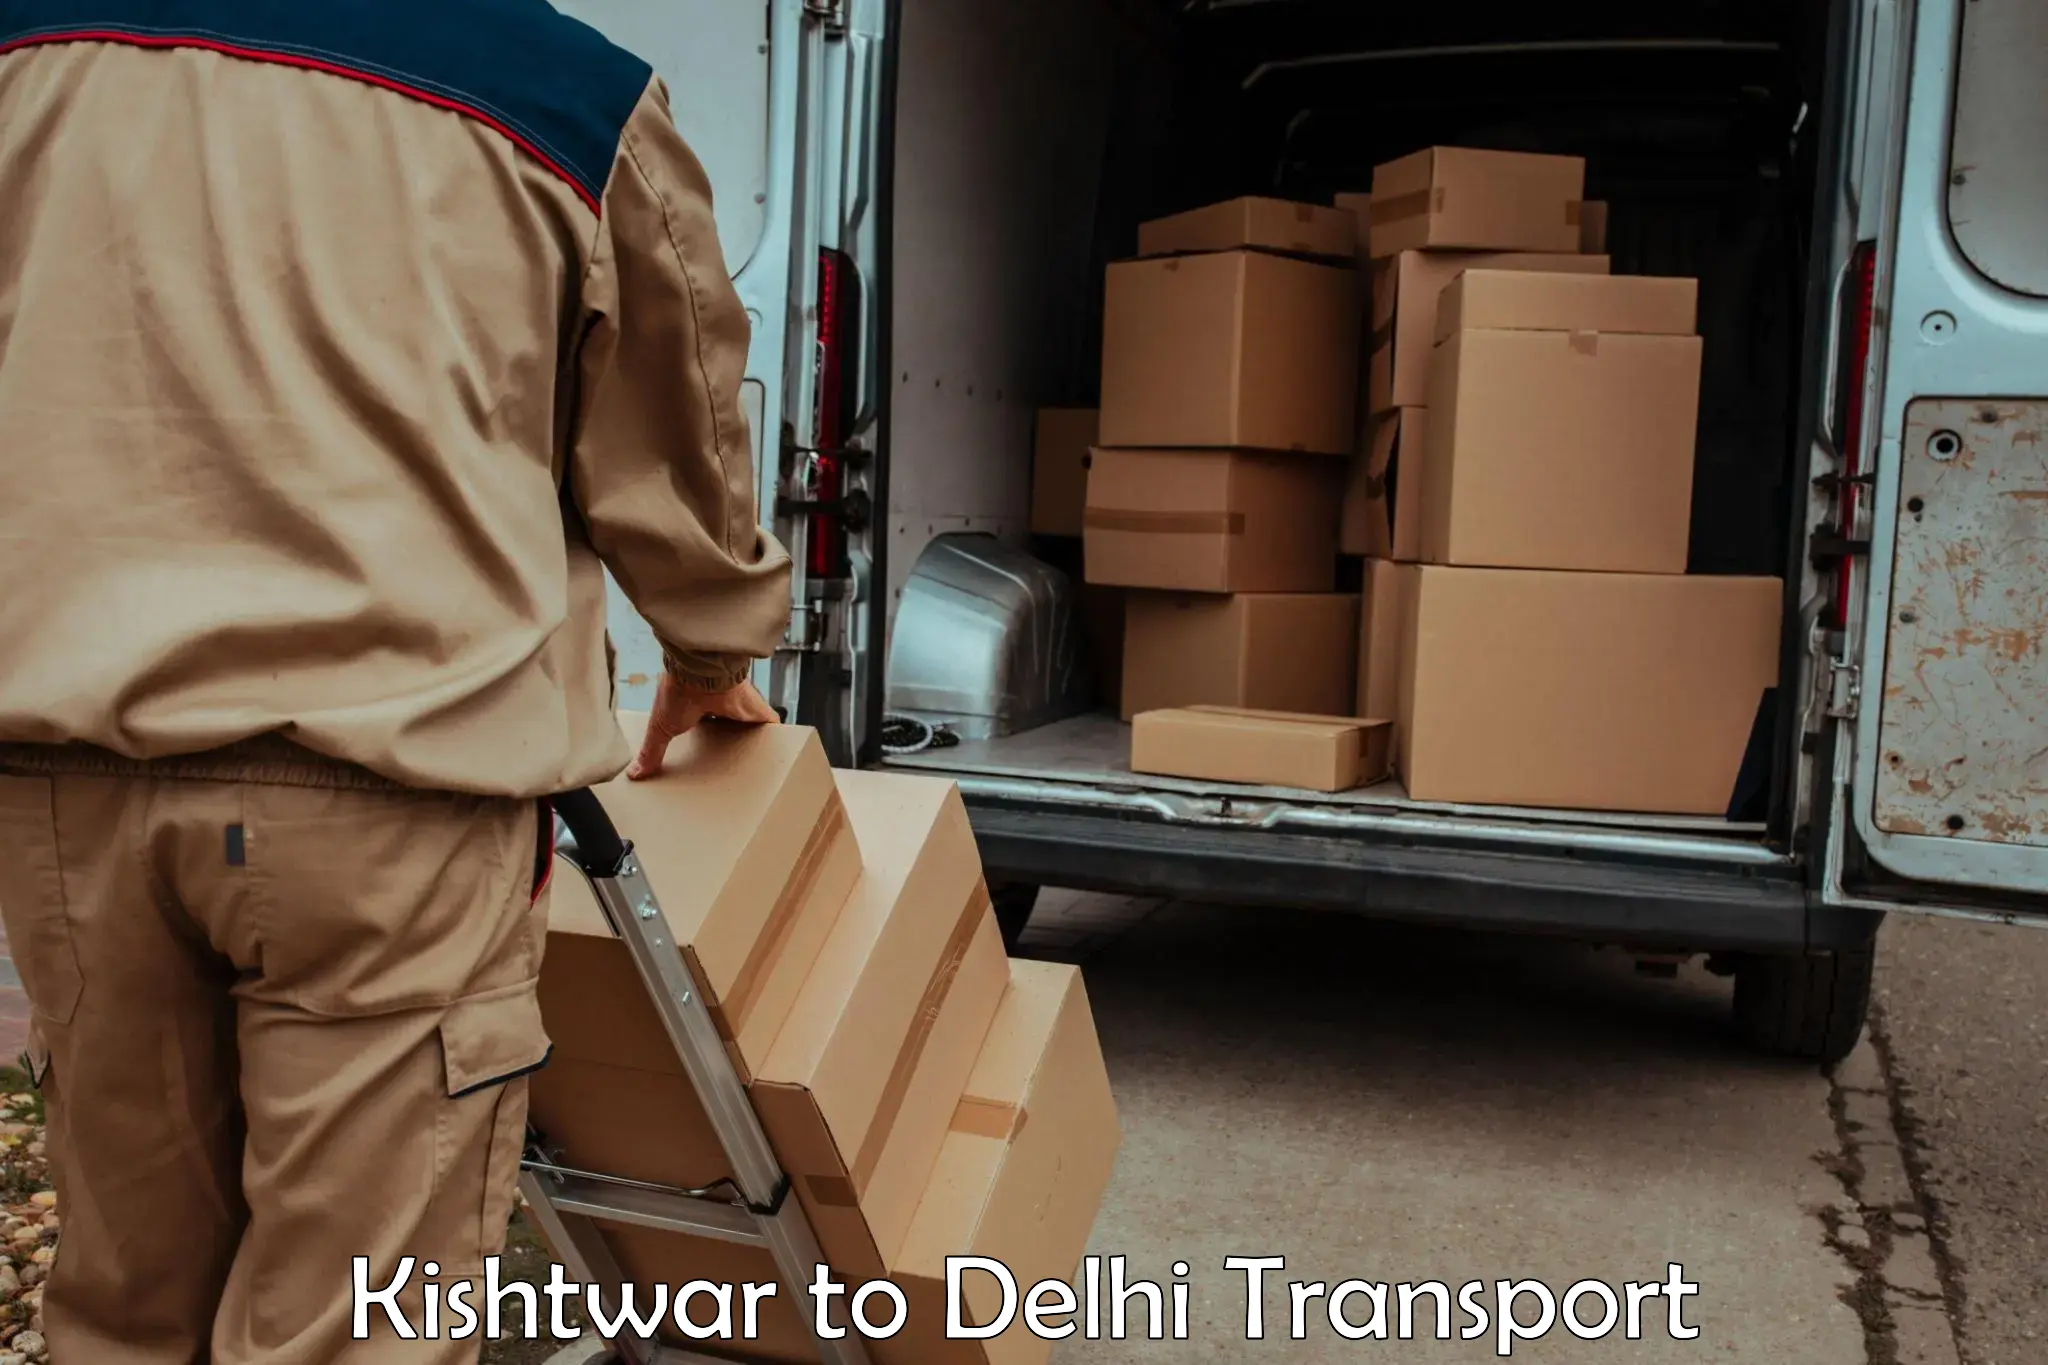 Intercity transport Kishtwar to IIT Delhi